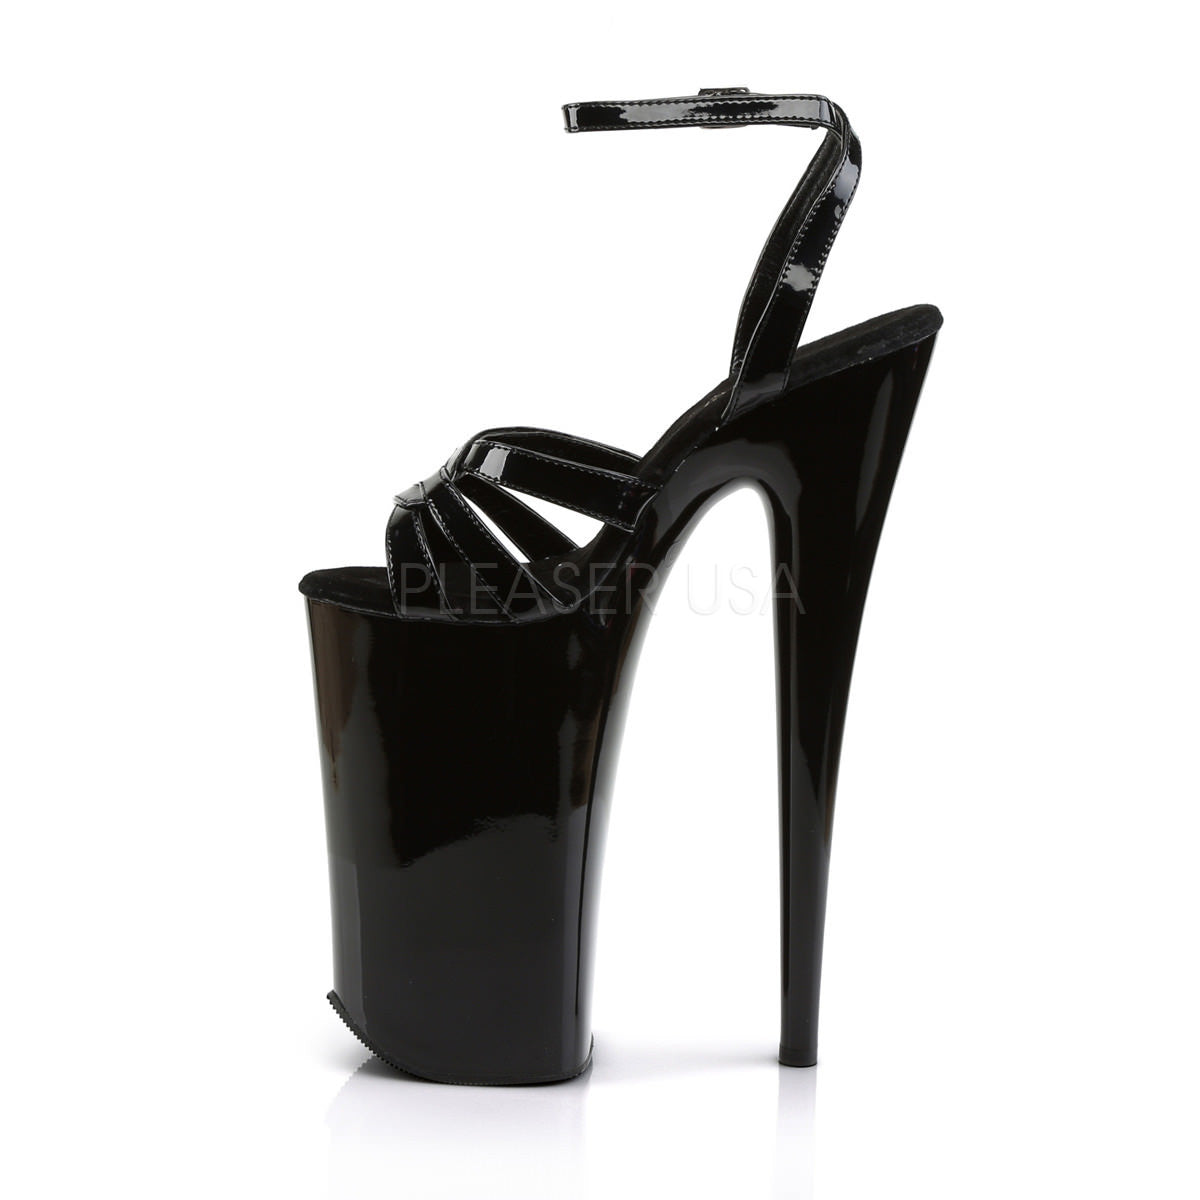 Pleaser BEYOND-012 Black 10 Inch Heel Ankle Strap Sandals - Shoecup.com - 3